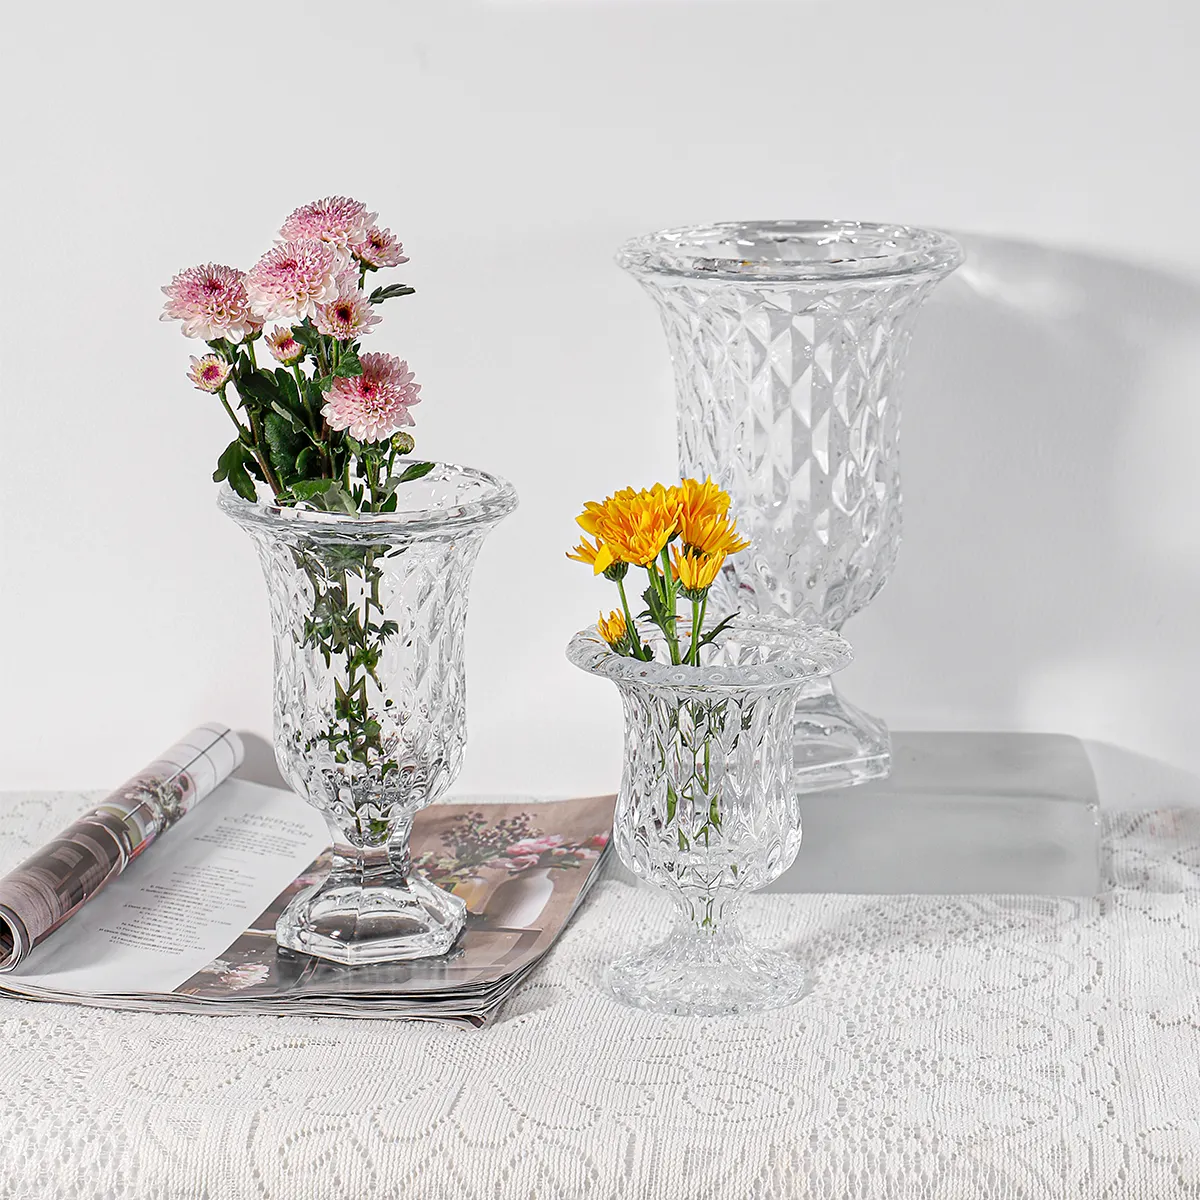 Kristallglas Blumenvase Set Transparente Dicke Runde Hydro ponik Hochzeit Home Decor Mini Retro Klarglas Vase für Blumen